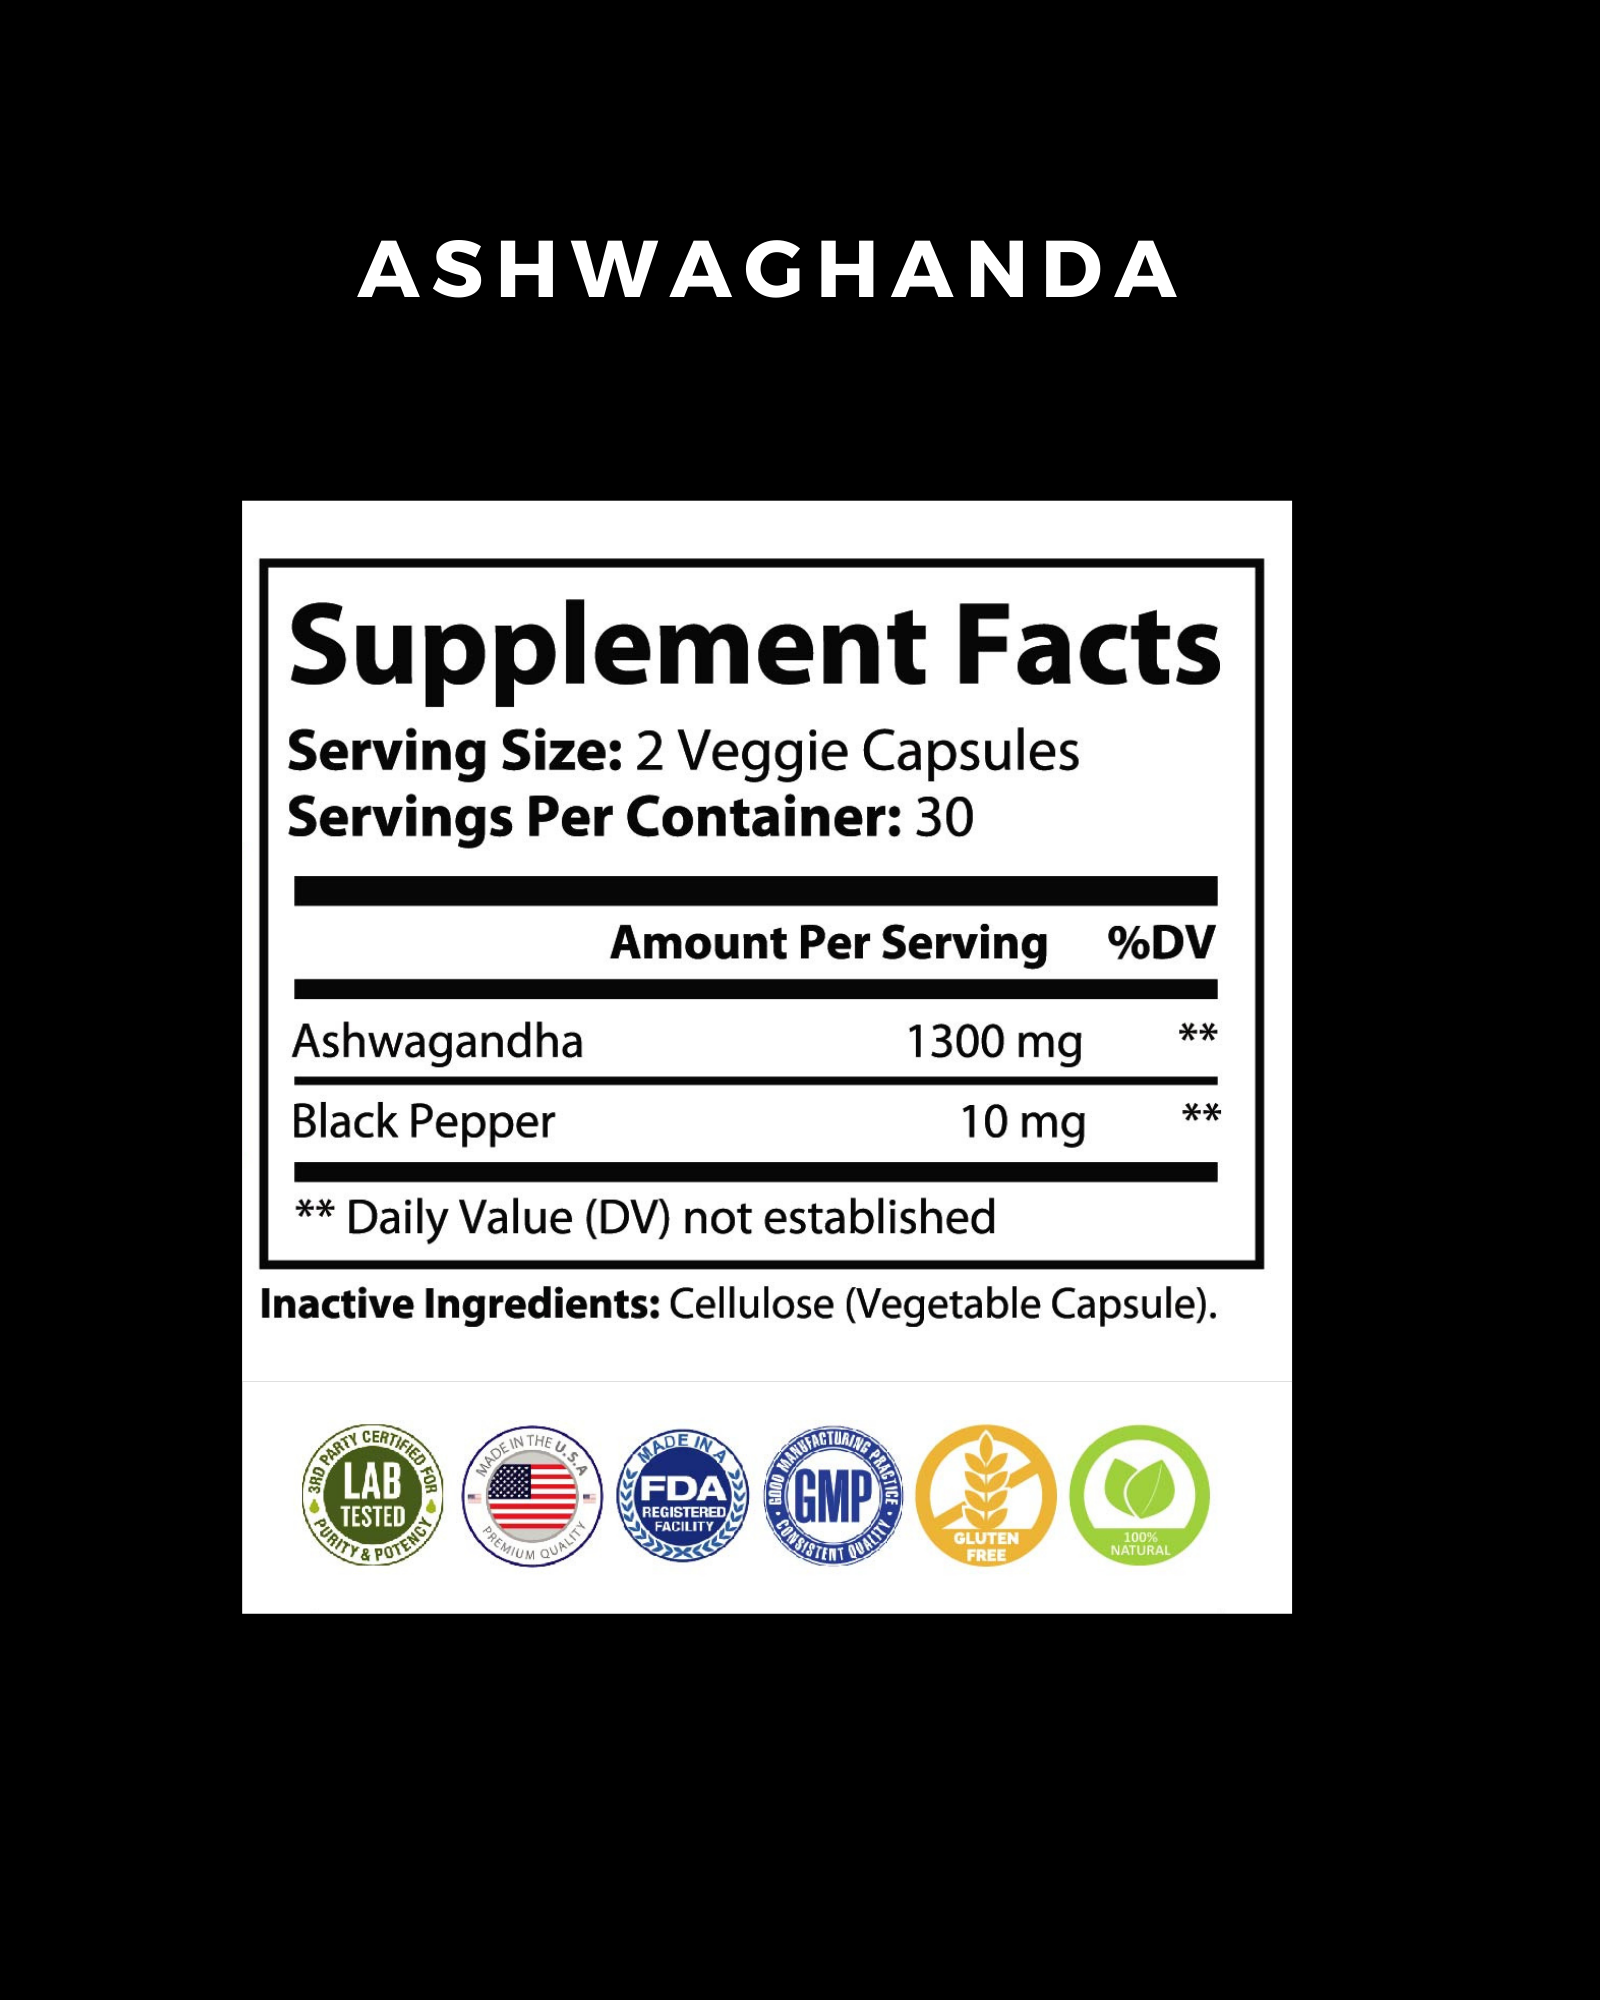 Vita Sharp Ashwagandha - Anxiety and Mood Support